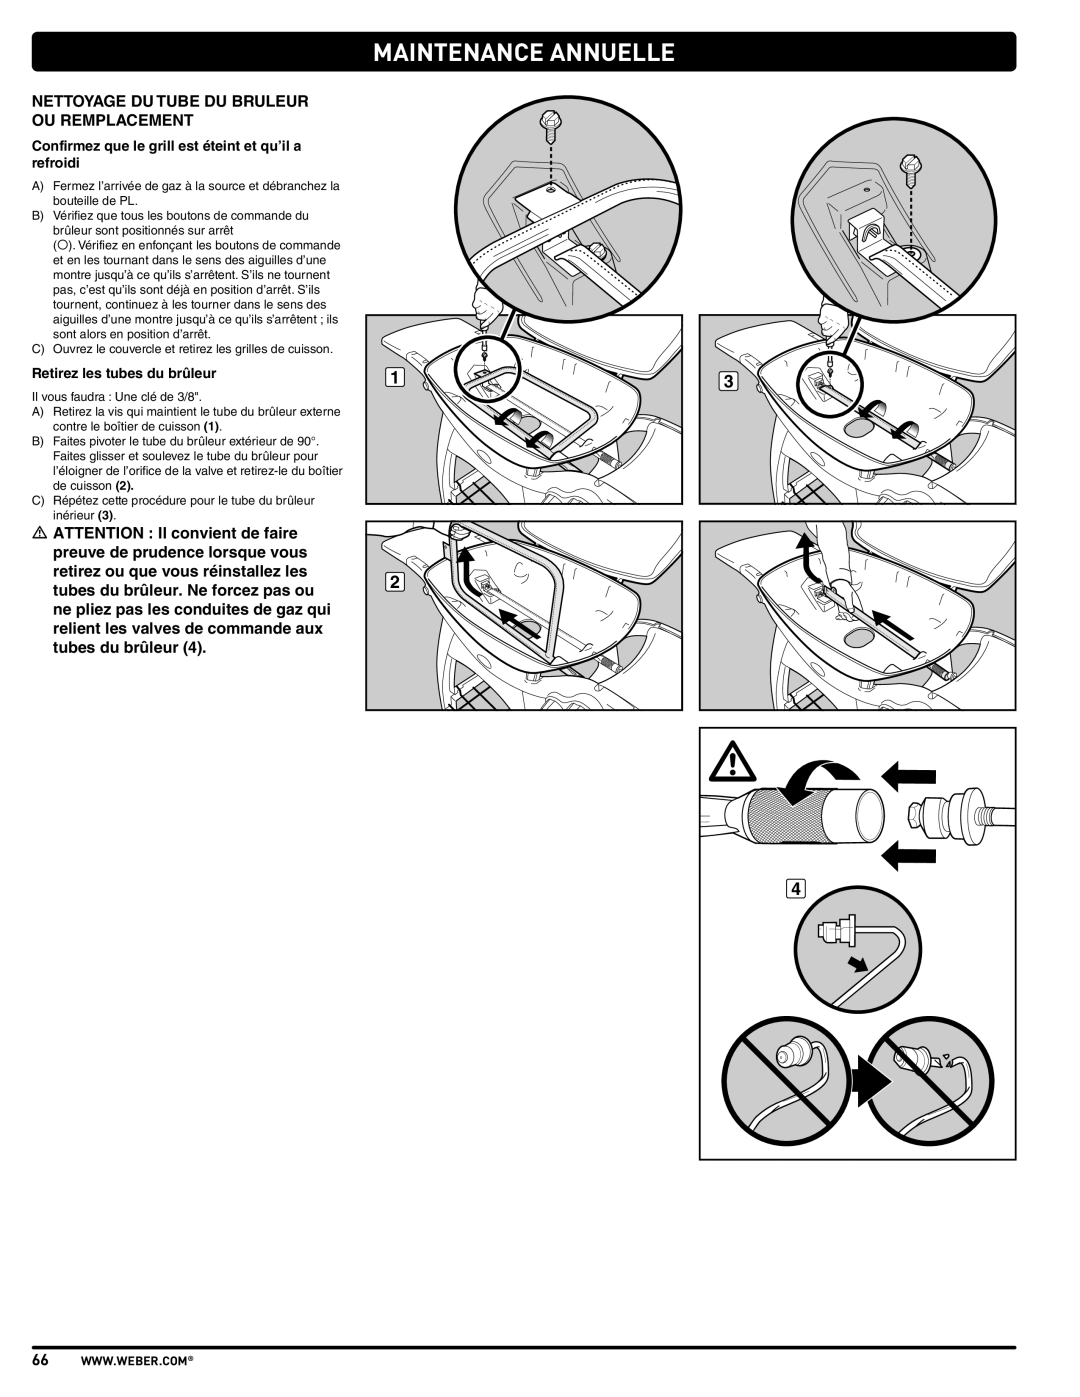 Weber 57515 manual Maintenance Annuelle, Nettoyage Du Tube Du Bruleur Ou Remplacement, Retirez les tubes du brûleur 